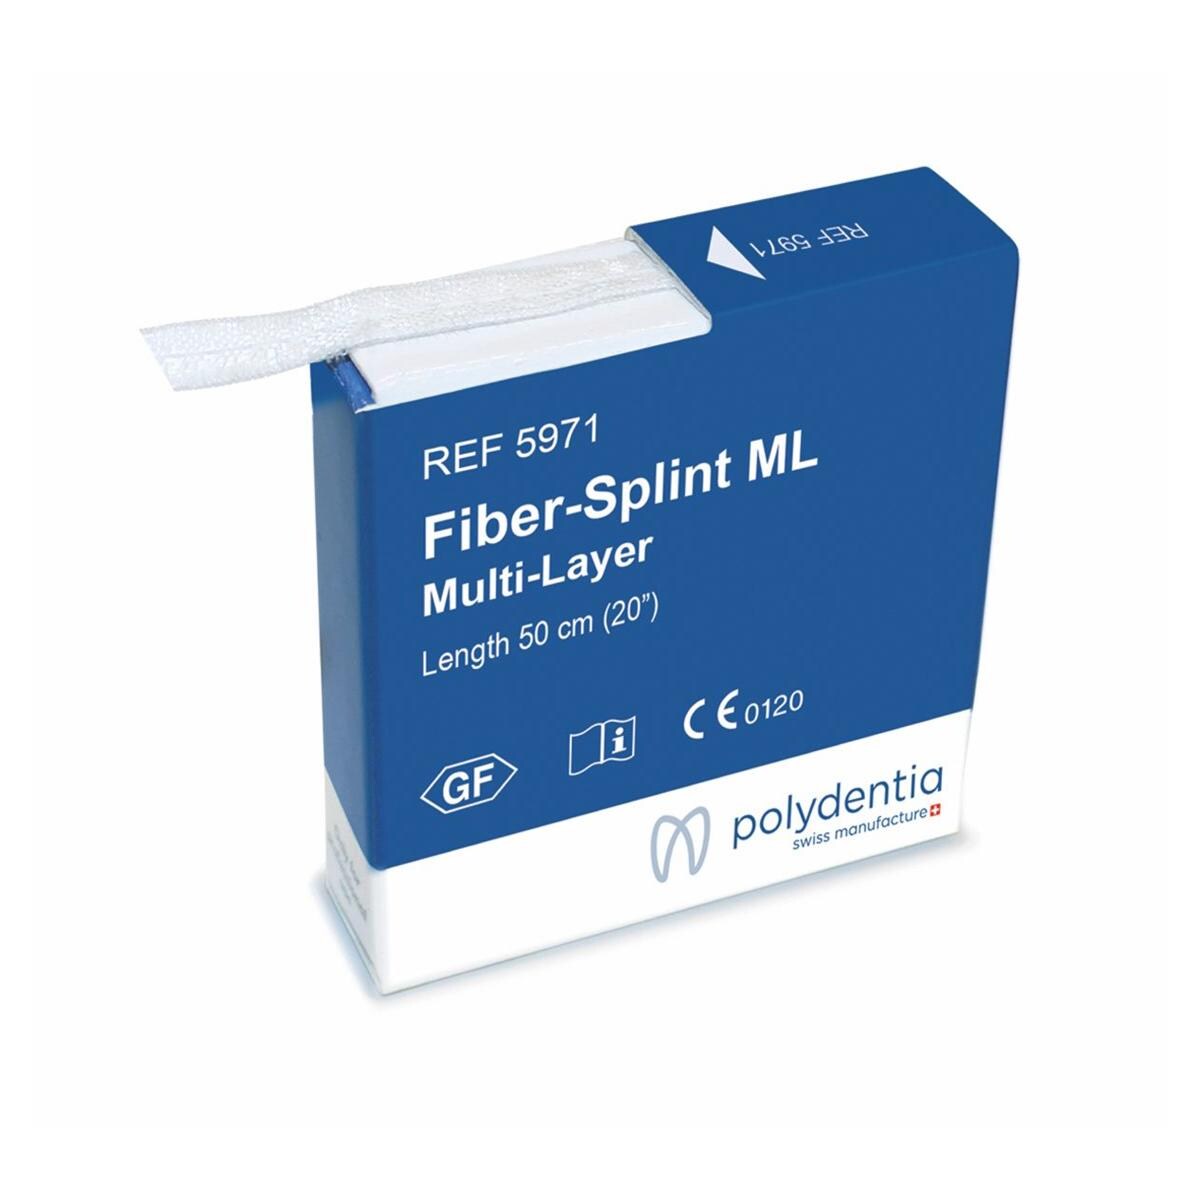 Fiber-Splint ML Multi-Layer